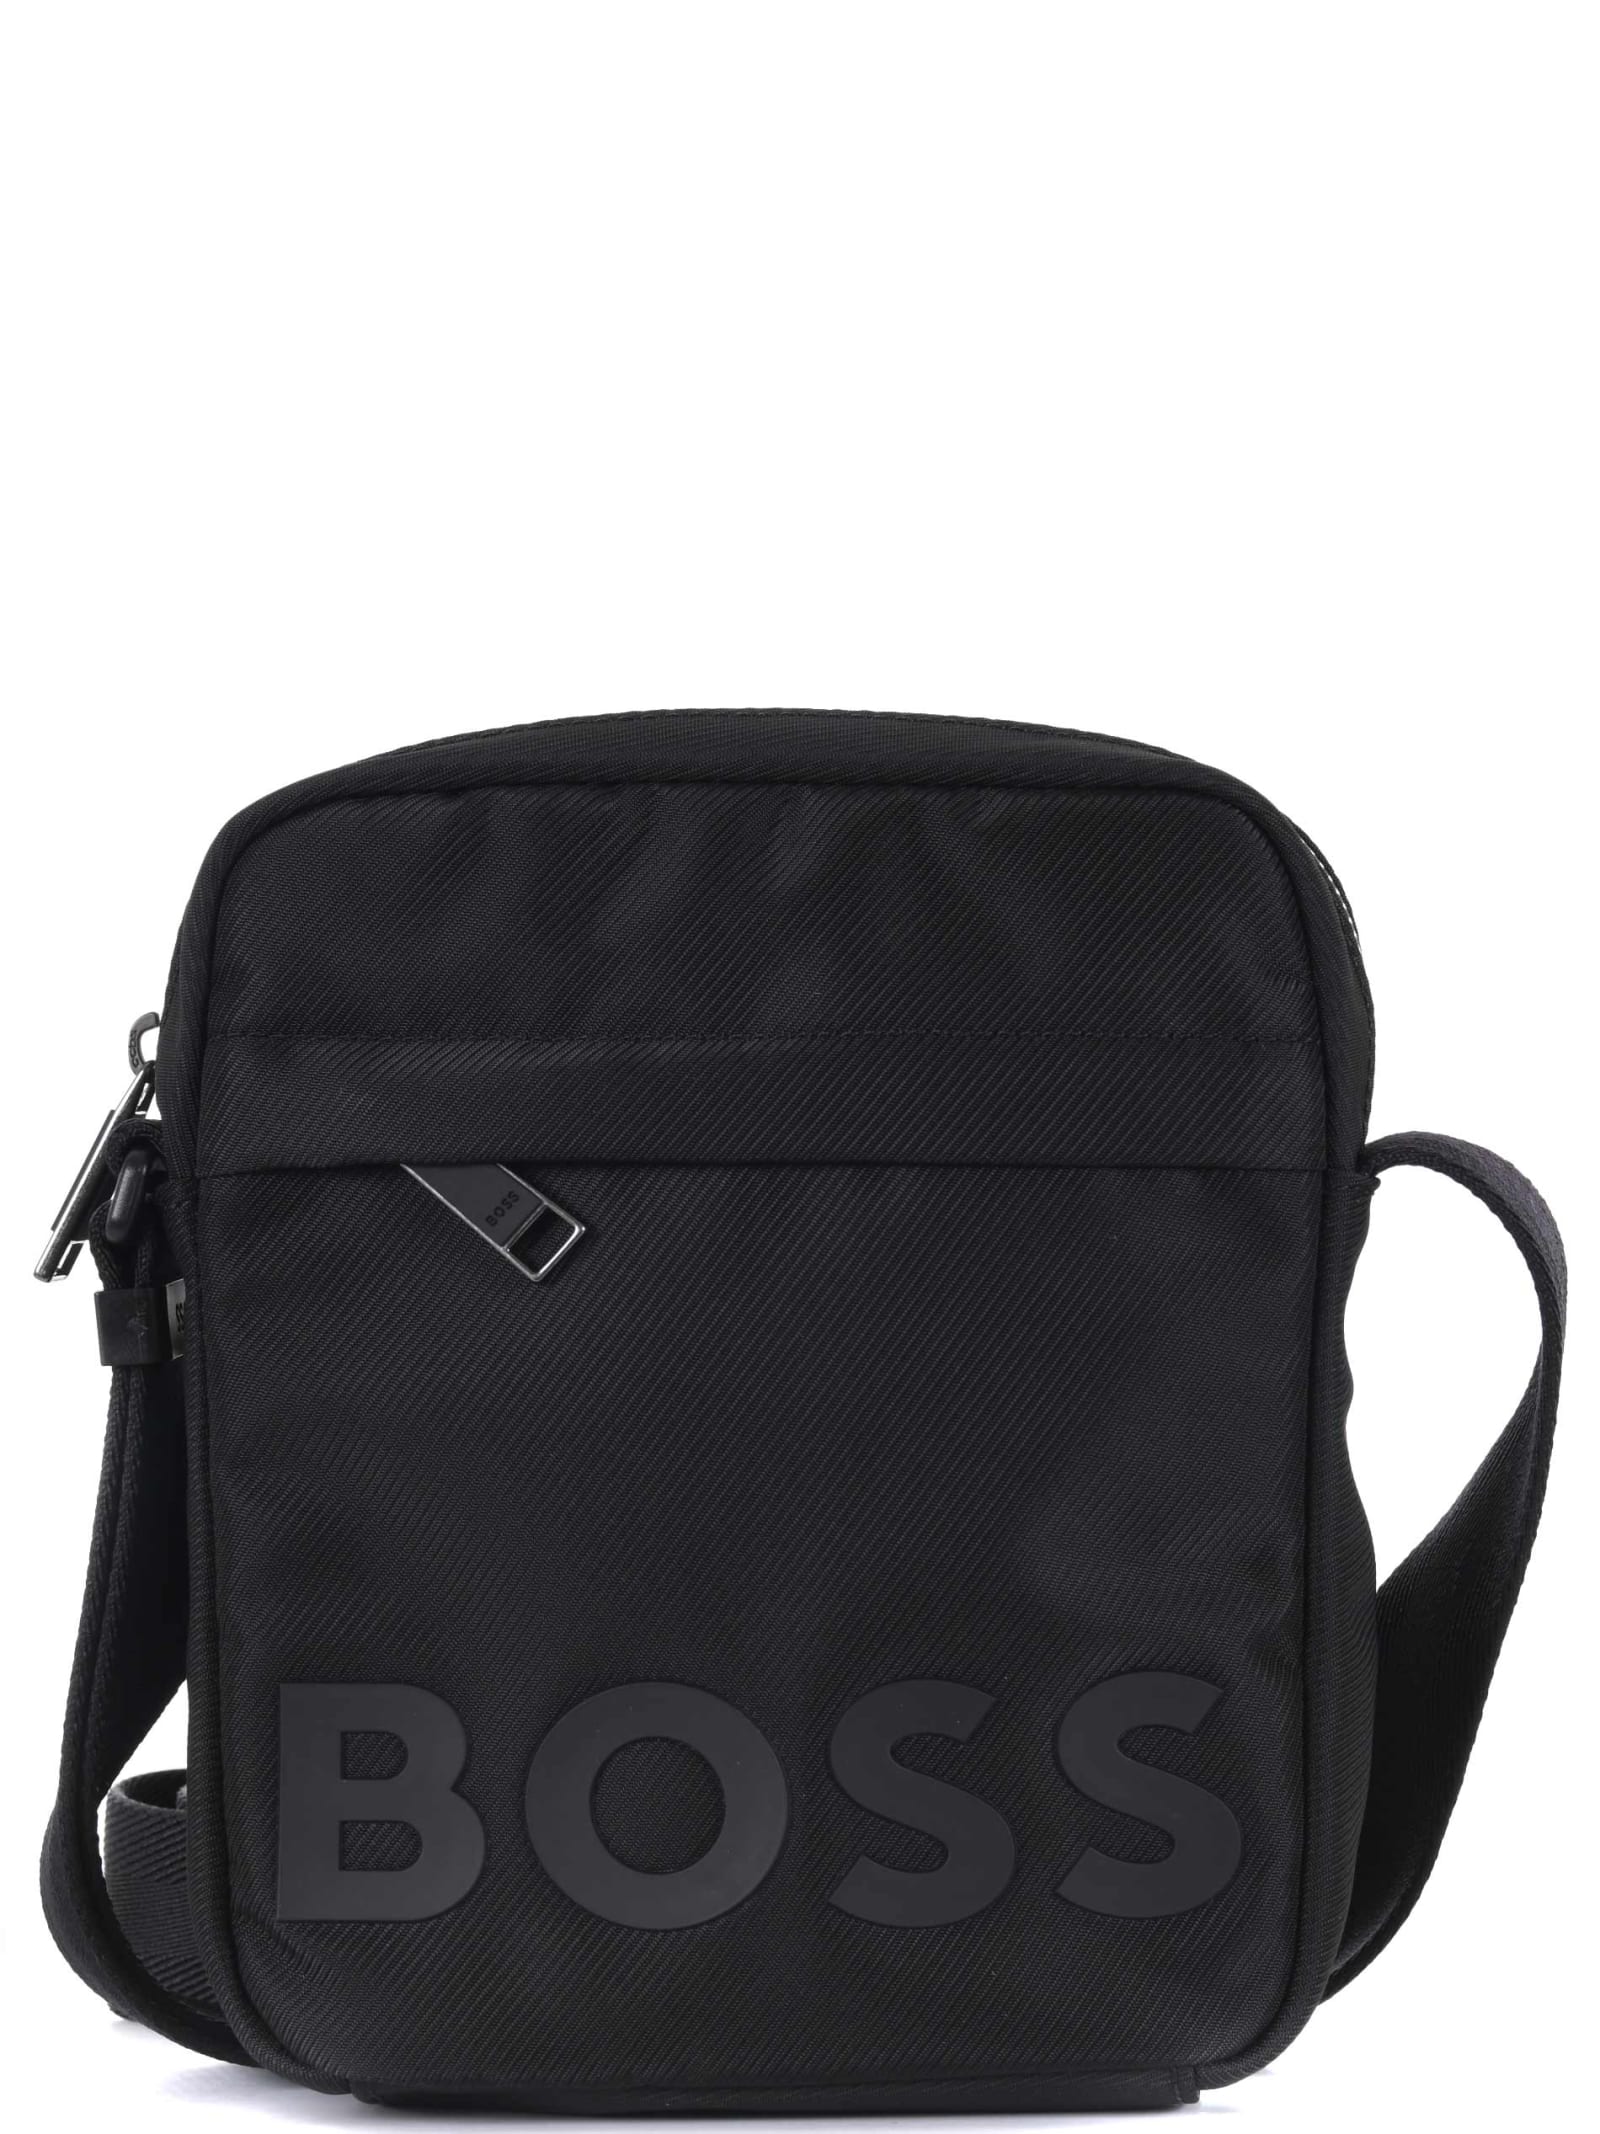 Shoulder Bag By Boss